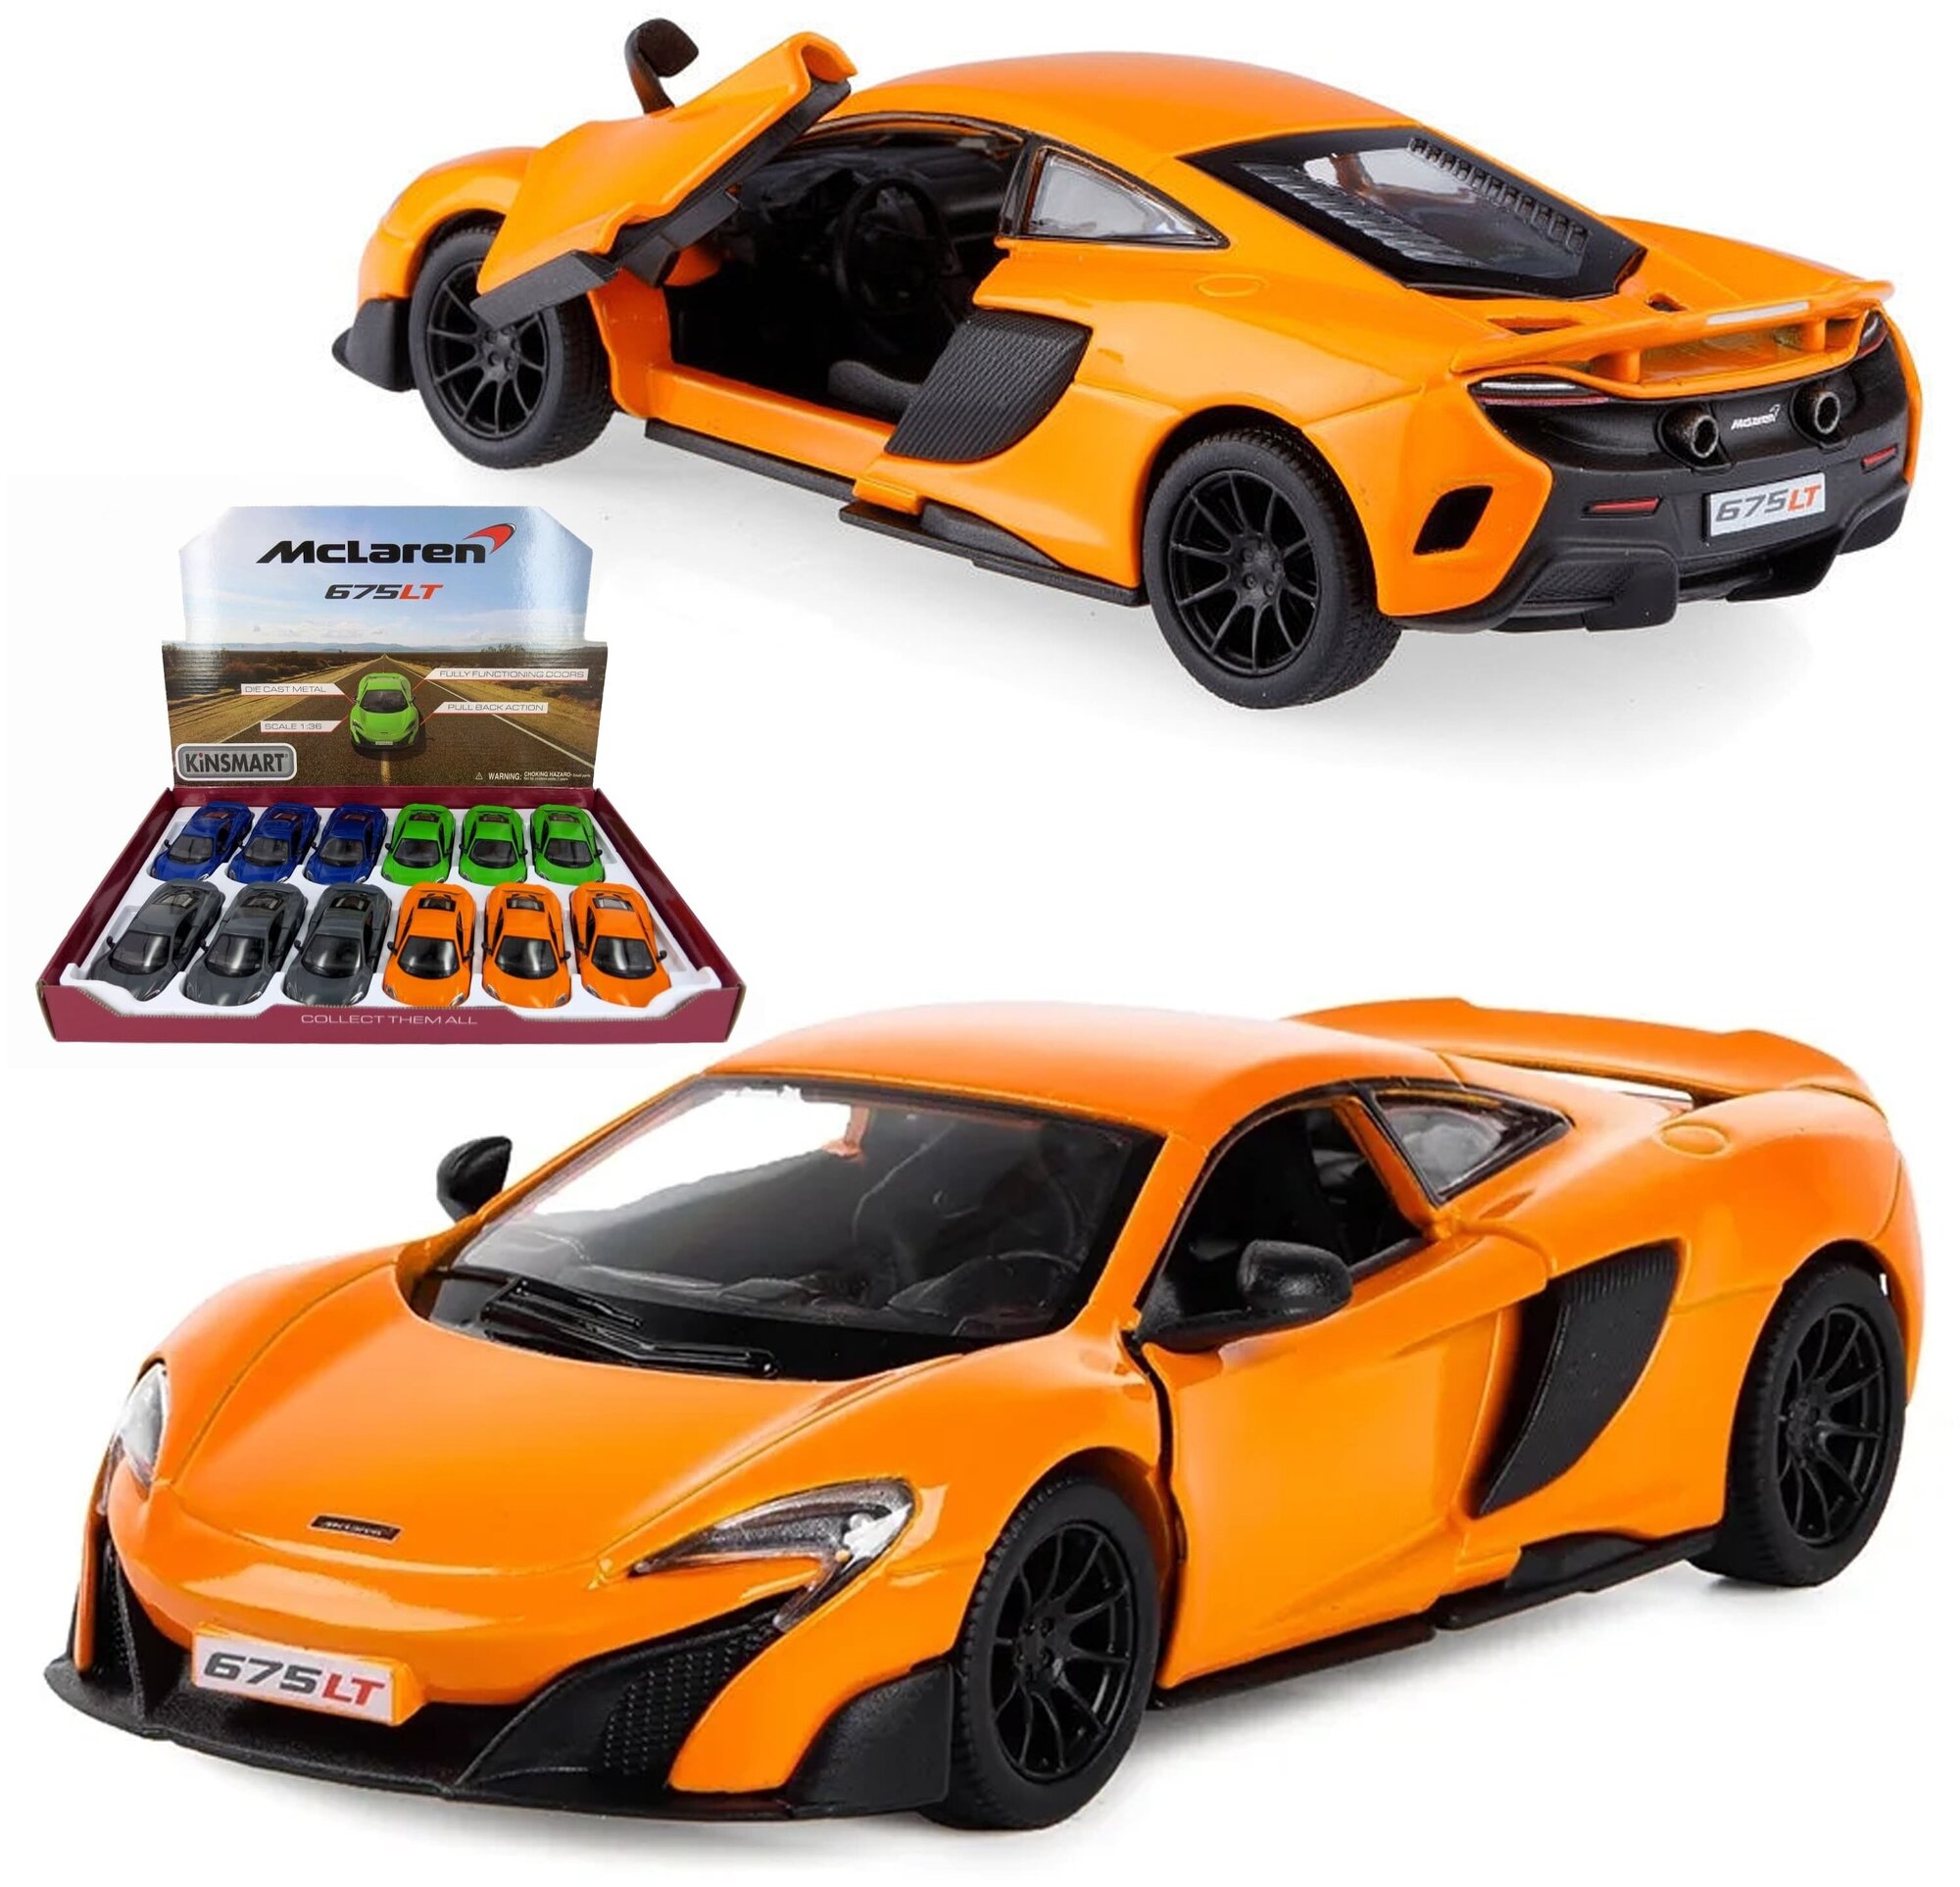 Машинка игрушка для мальчика металлическая, инерционная 1:36 McLaren 675LT в дисплейбоксе, оранжевый, в подарок для ребенка, малыша на день рождения, новый год или 23 февраля